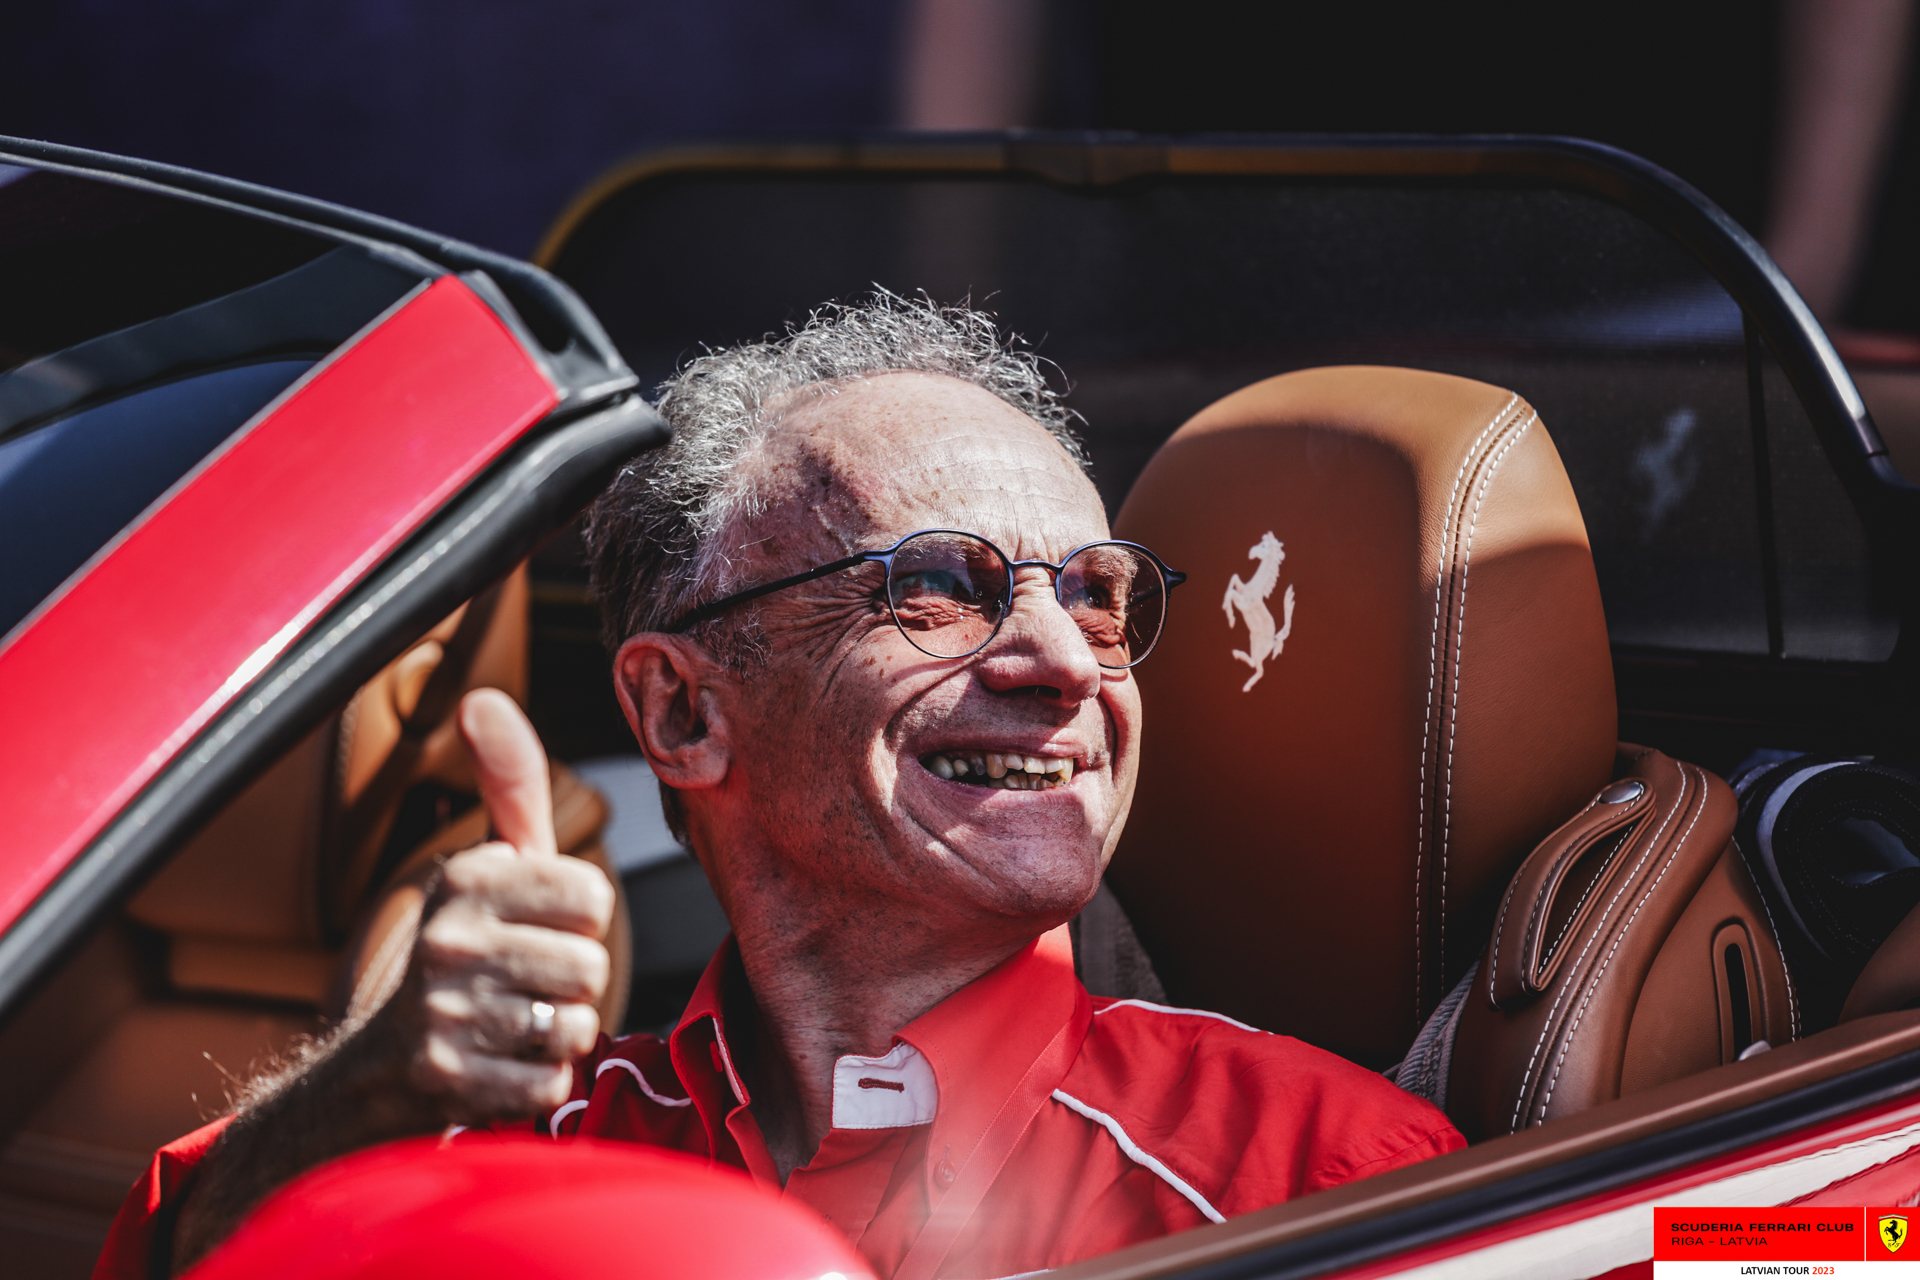 A Ferrari owner in his red Ferrari. 